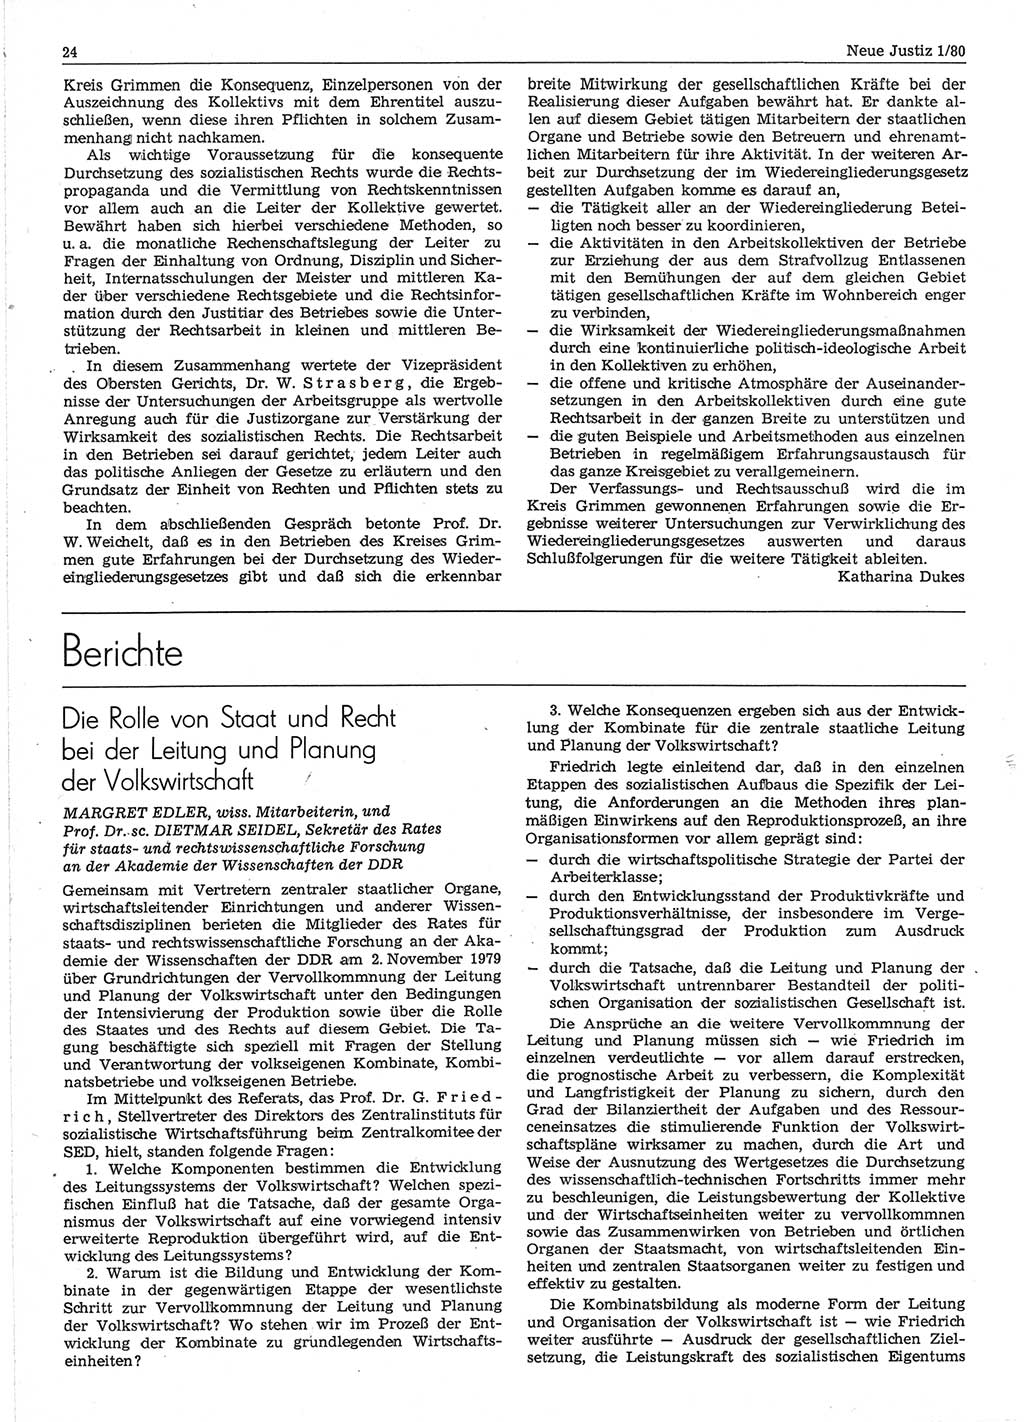 Neue Justiz (NJ), Zeitschrift für sozialistisches Recht und Gesetzlichkeit [Deutsche Demokratische Republik (DDR)], 34. Jahrgang 1980, Seite 24 (NJ DDR 1980, S. 24)